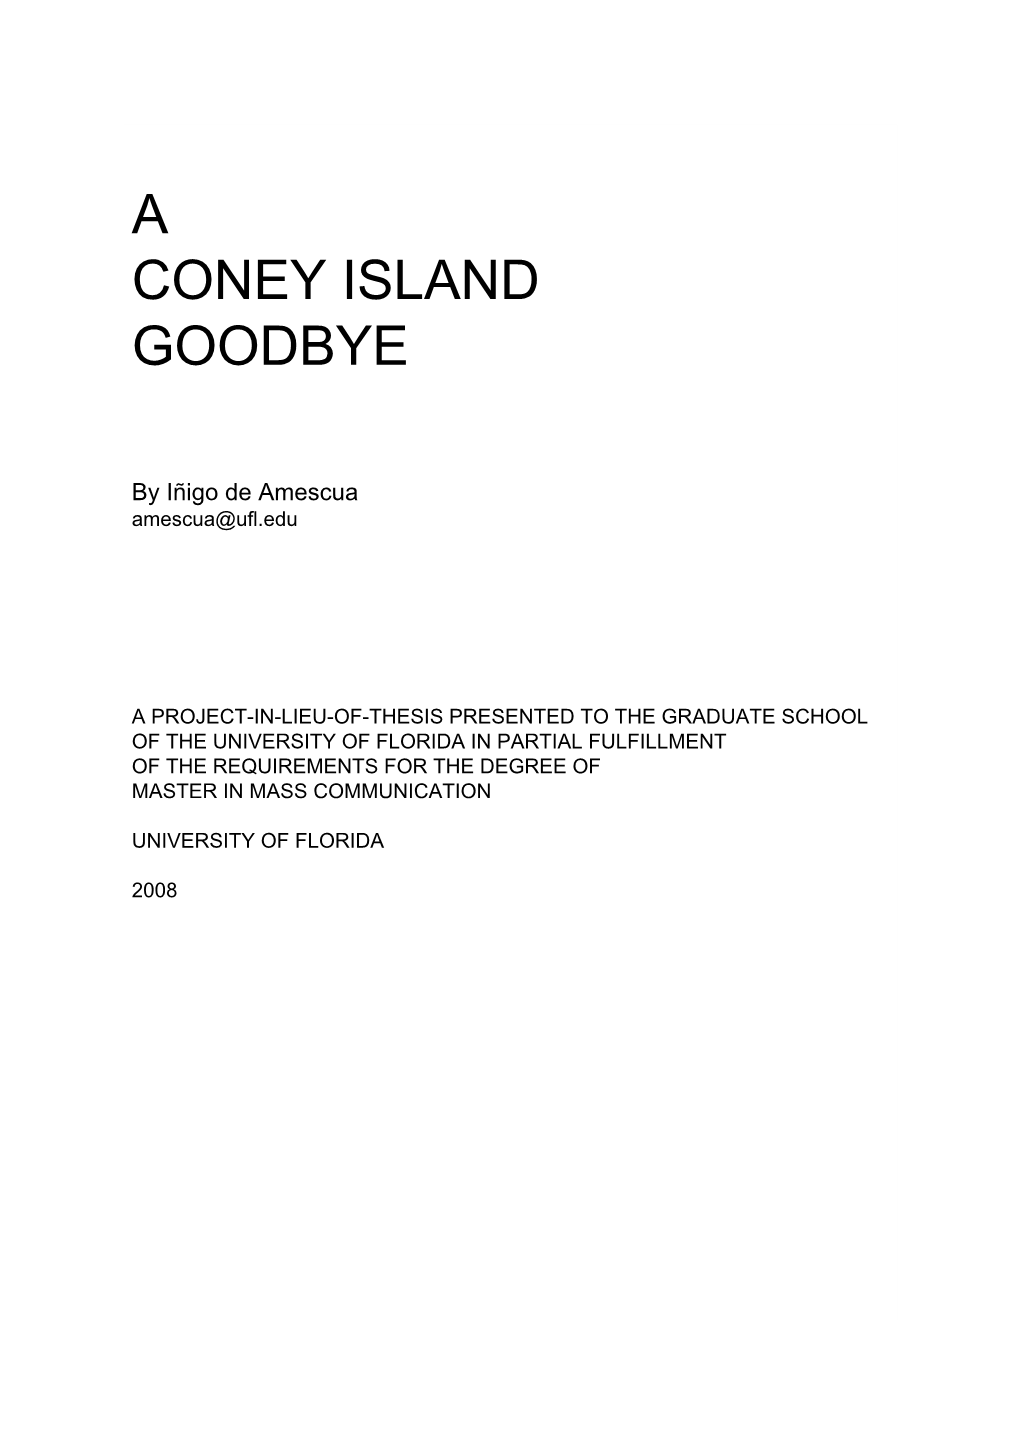 A Coney Island Goodbye